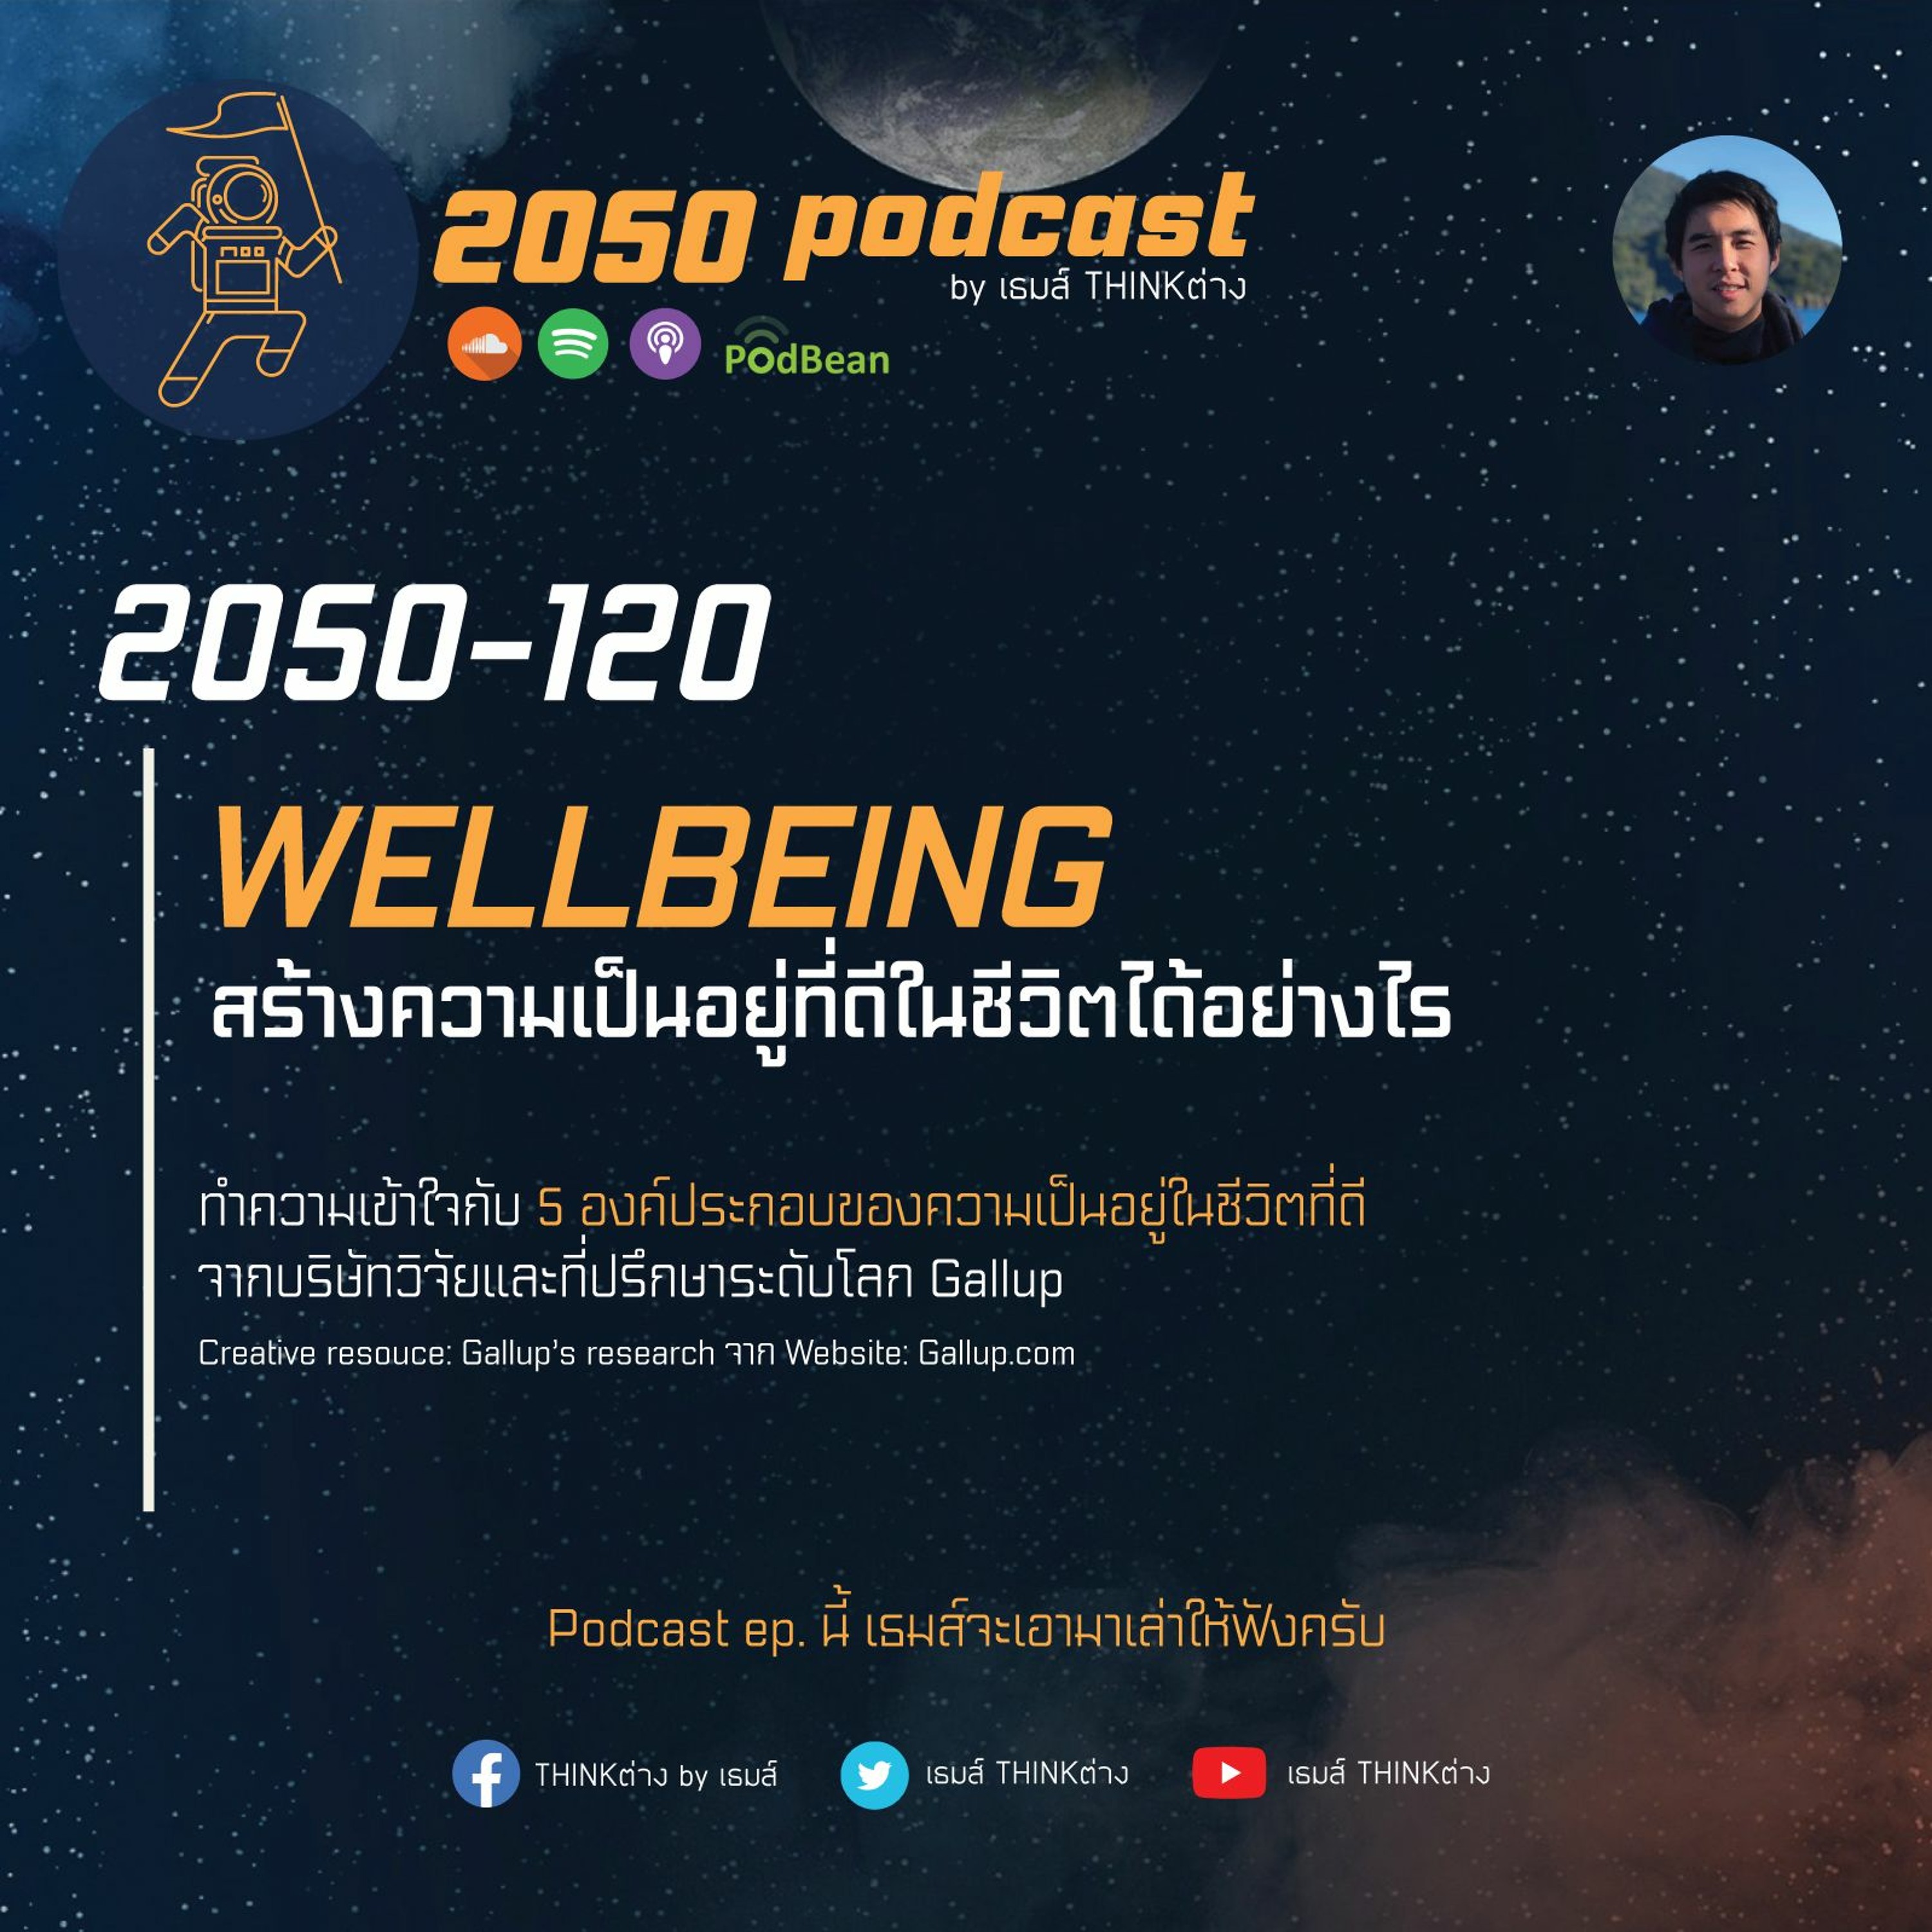 2050-120 : สร้างความเป็นอยู่ที่ดีในชีวิต (Wellbeing) ได้อย่างไร